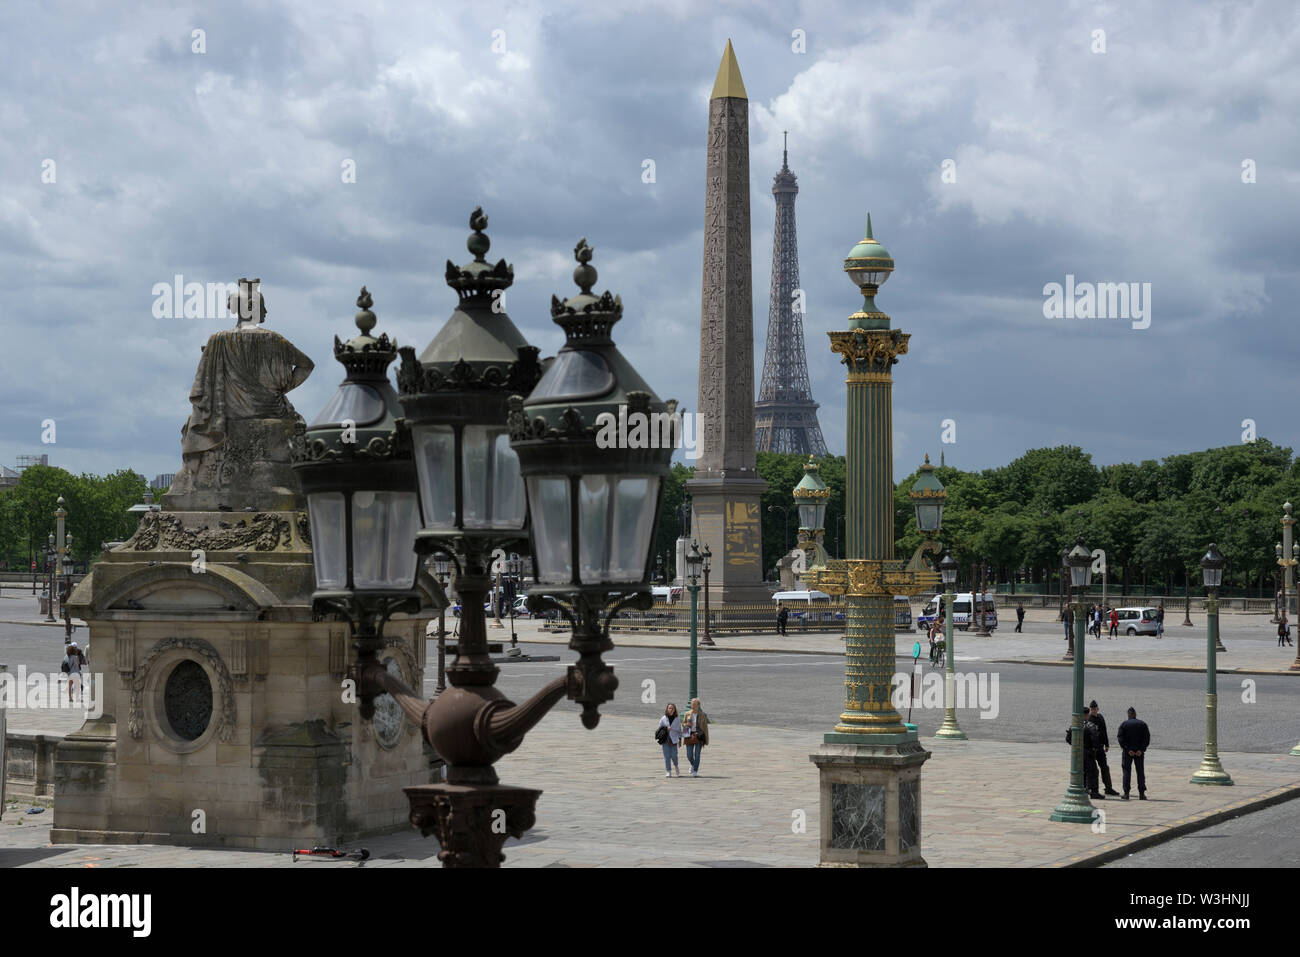 Vue de la Place de la Concorde, l'Obélisque et de la Tour Eiffel un jour de fête nationale, Paris, France Banque D'Images